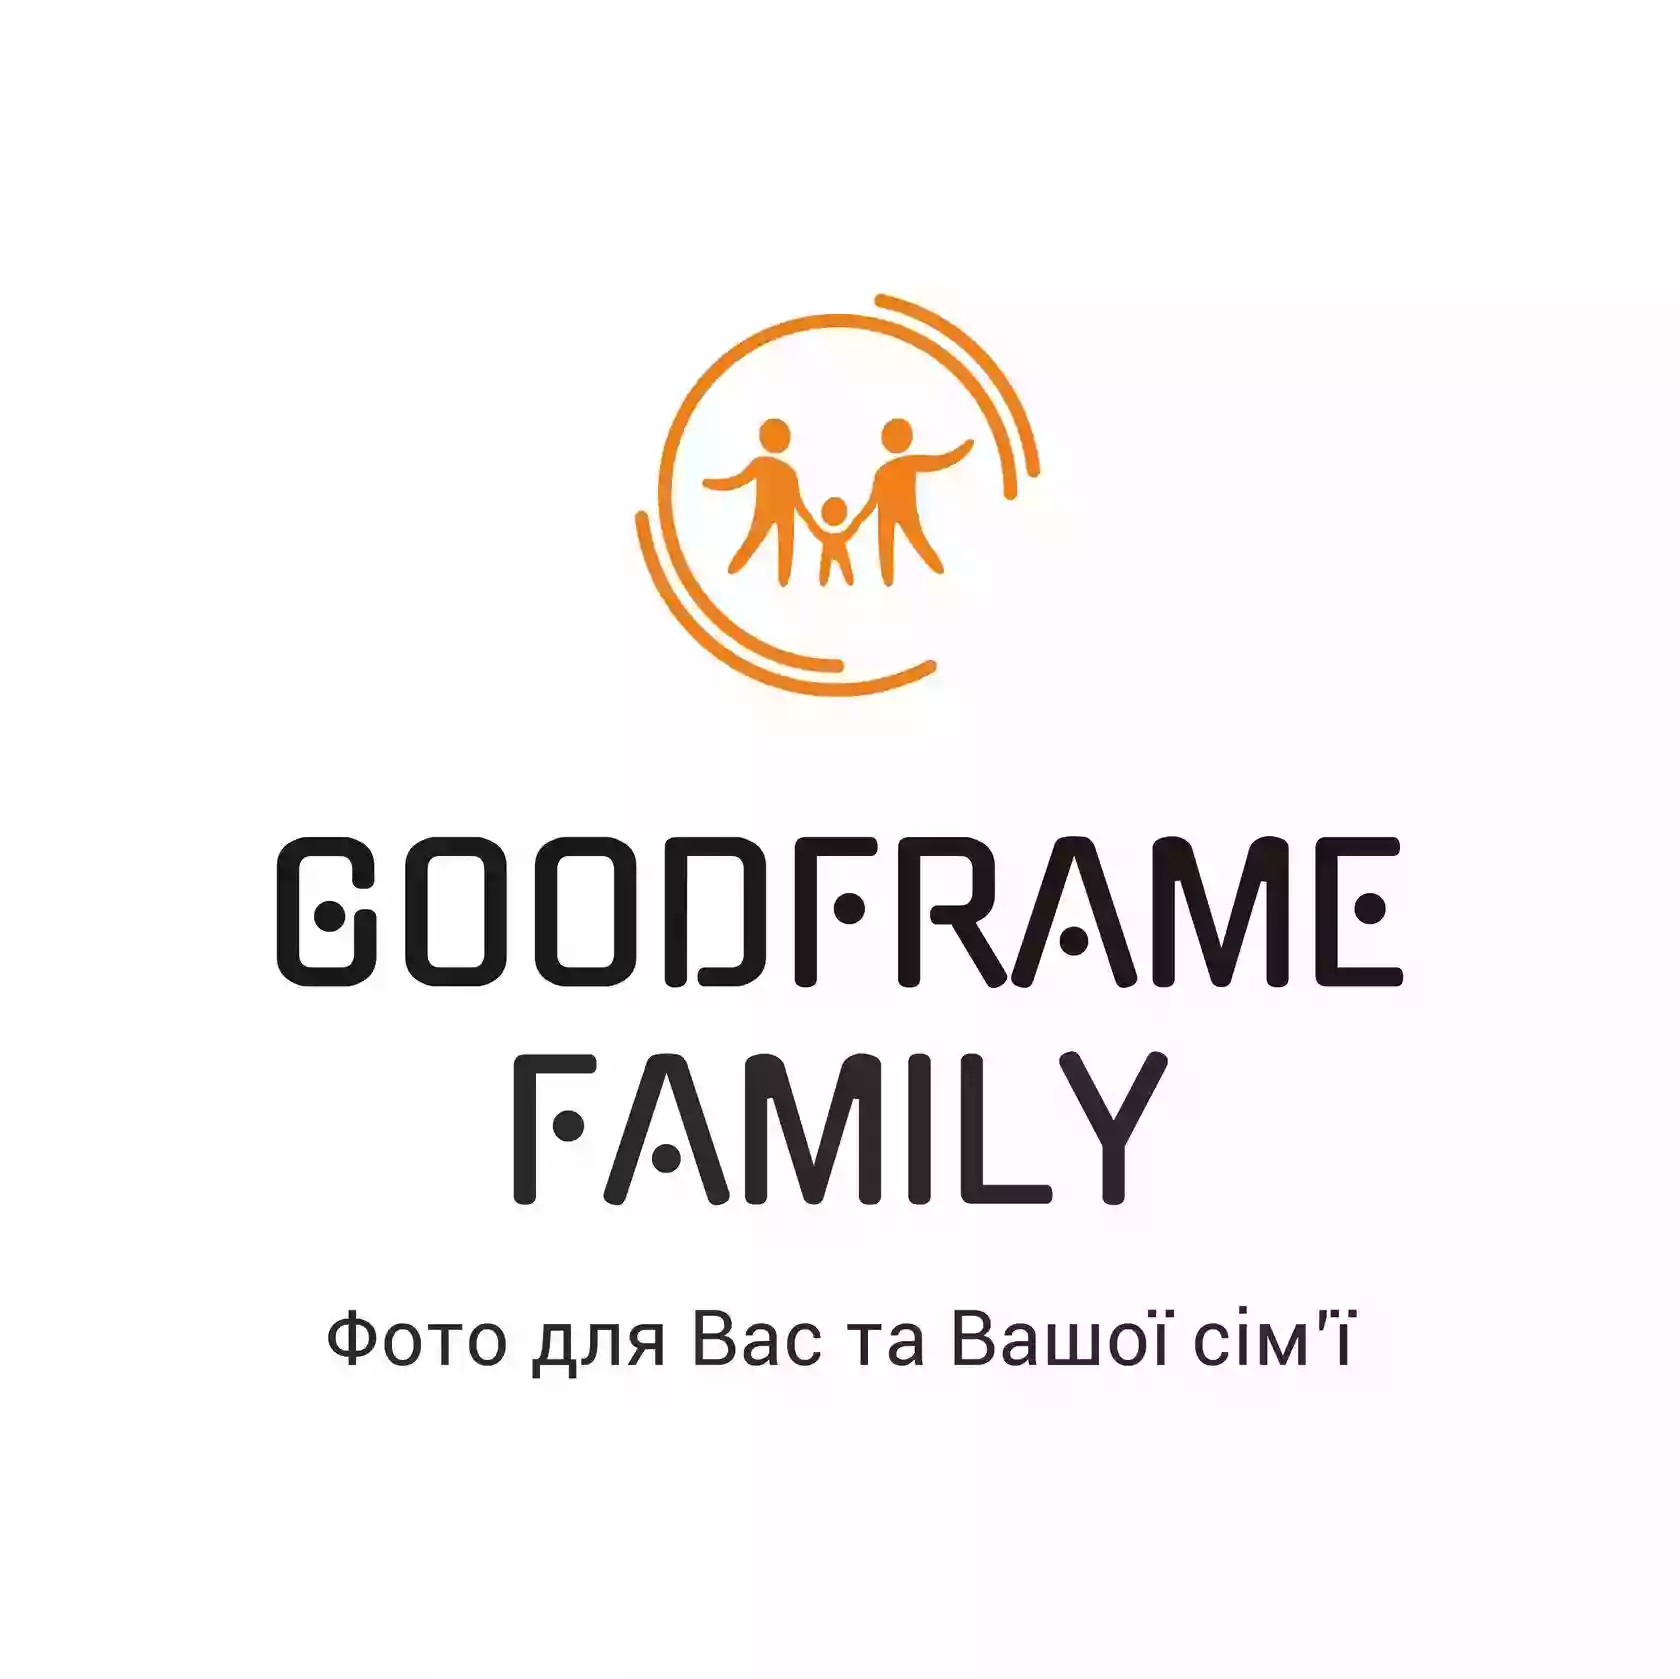 Goodframe Family - Фото для Вас и Вашей семьи